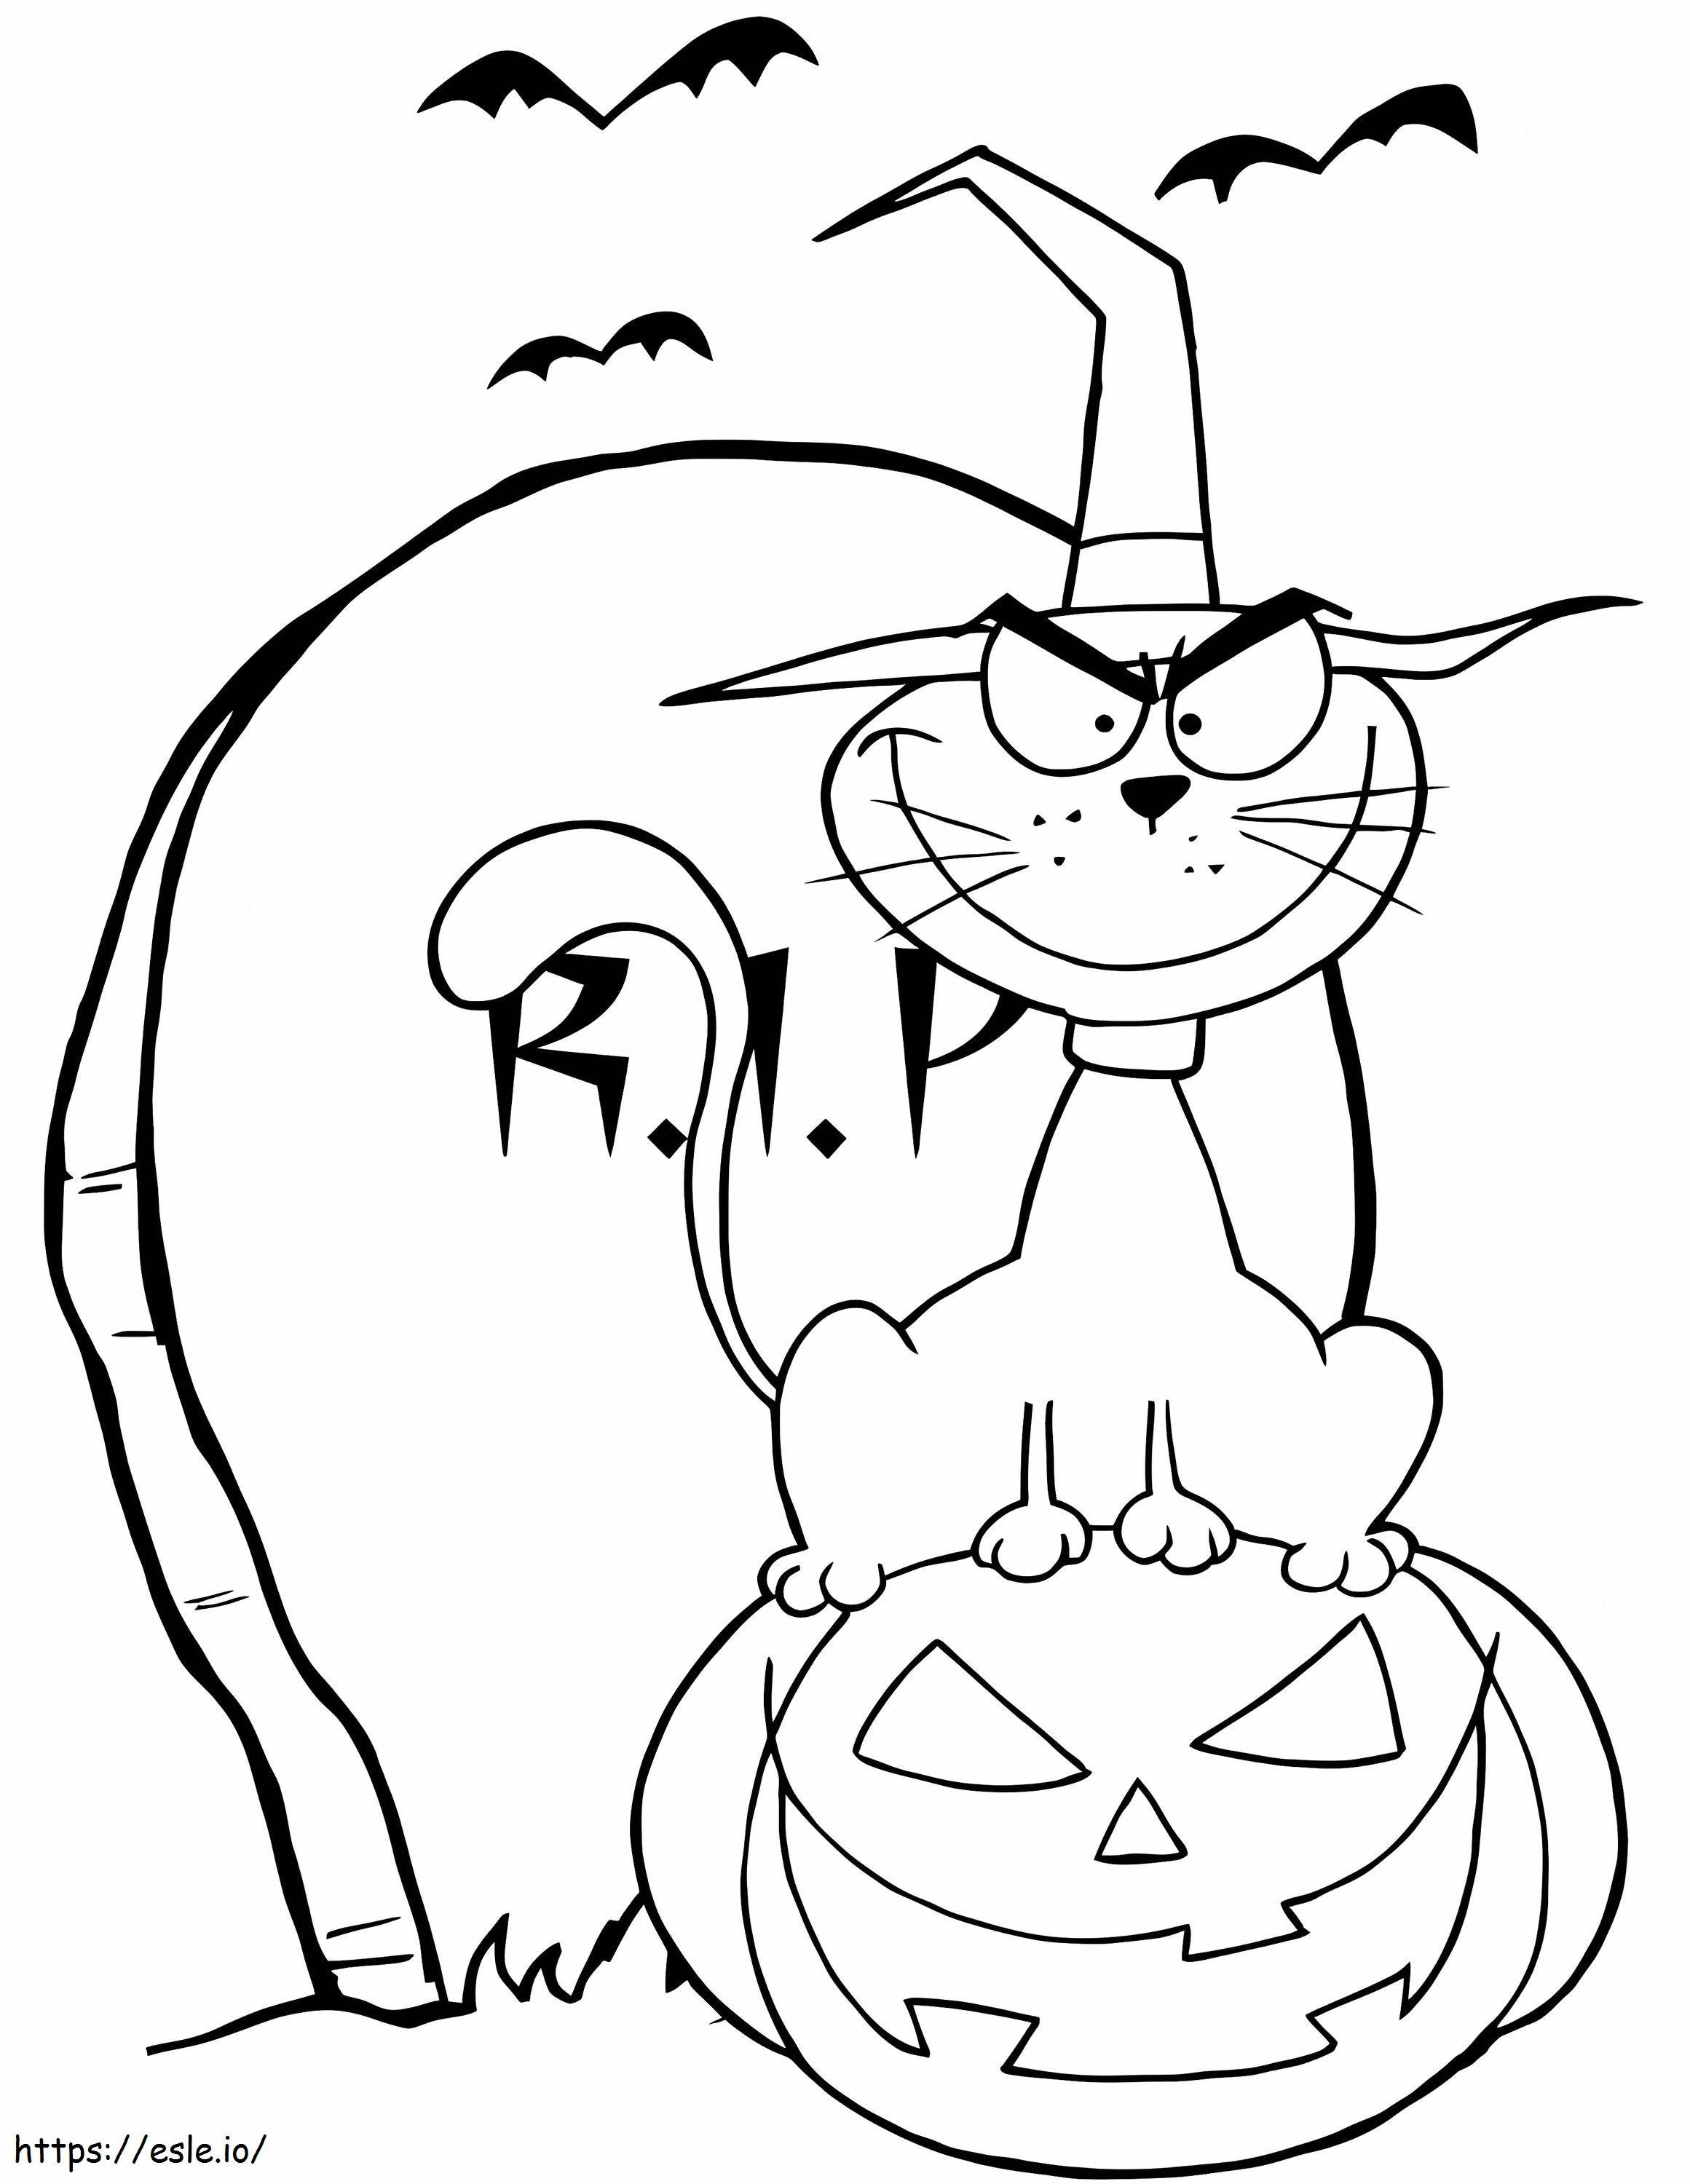 Halloweenowy kot się uśmiecha kolorowanka